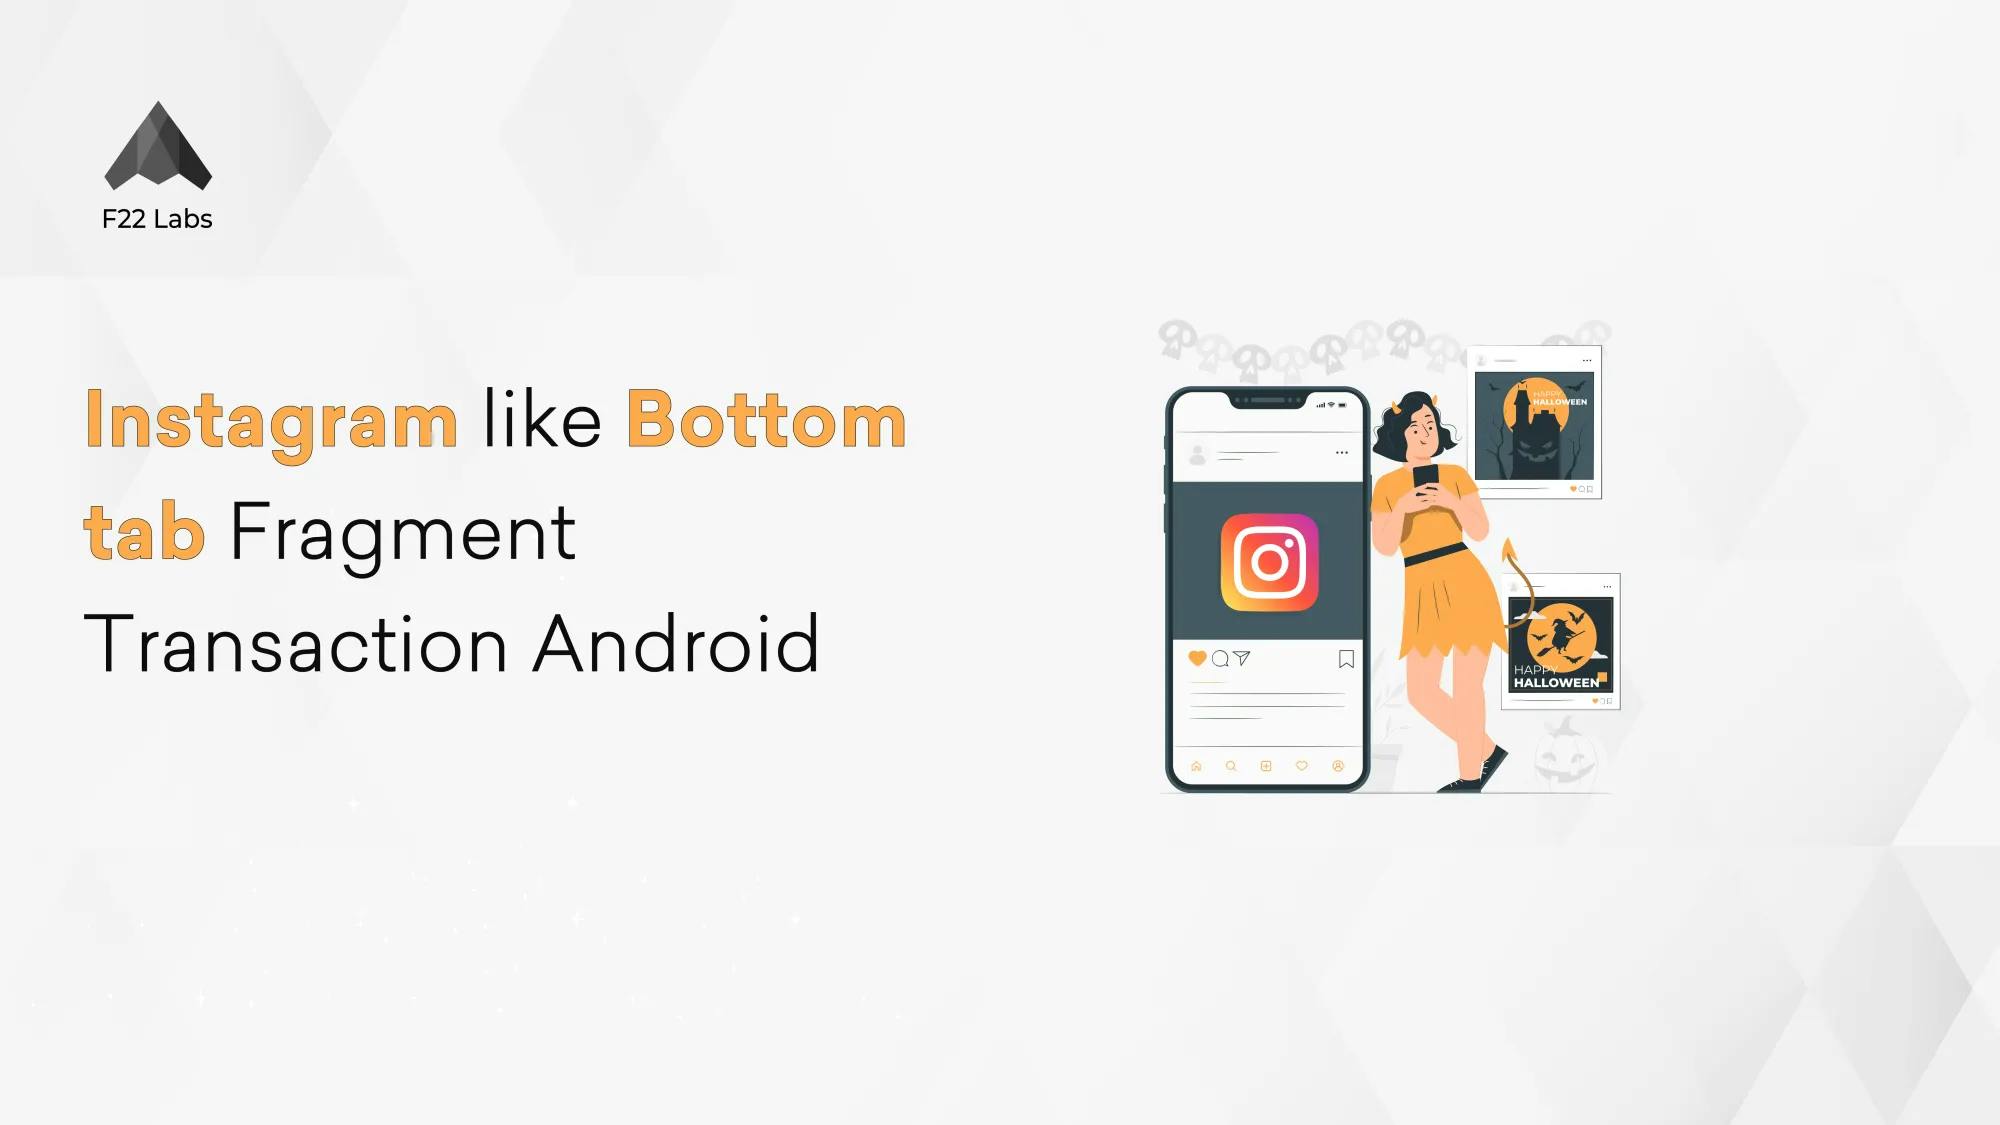 Instagram-like Bottom tab Fragment Transaction Android Hero